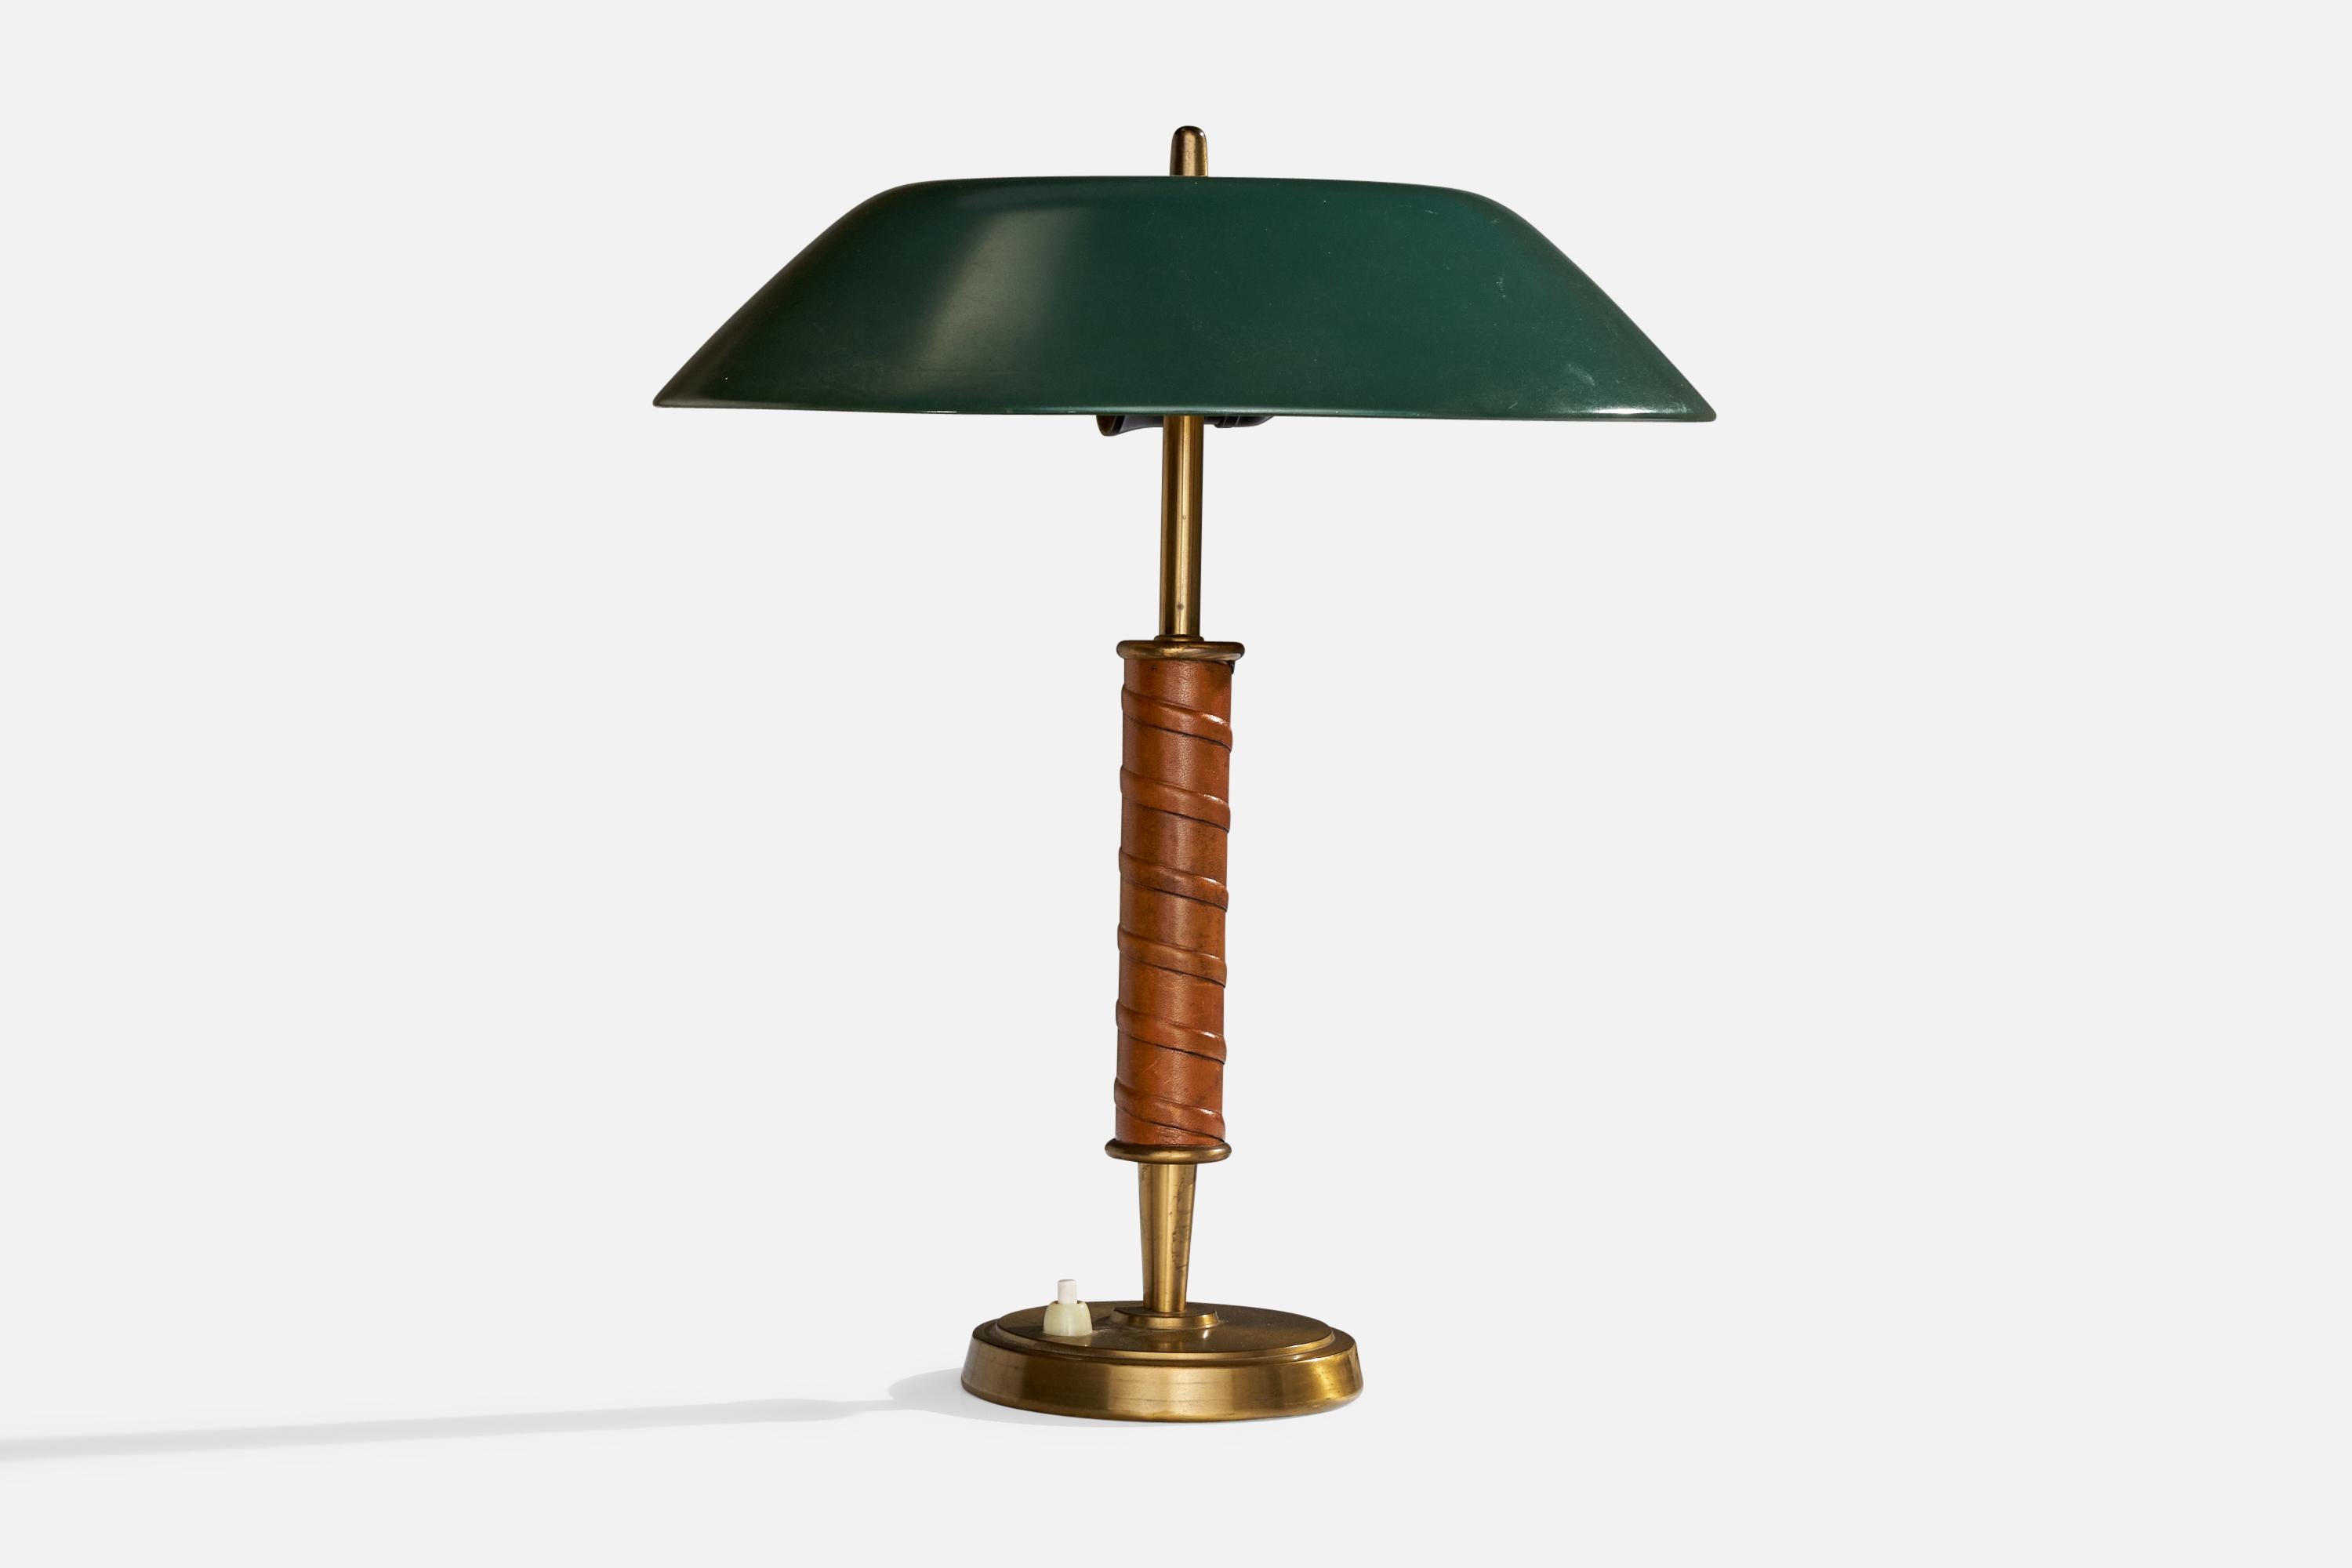 Lampe de table en laiton, métal laqué vert et cuir produite par Nordiska Kompaniet, Suède, vers les années 1940.

Dimensions globales (pouces) : 15.36